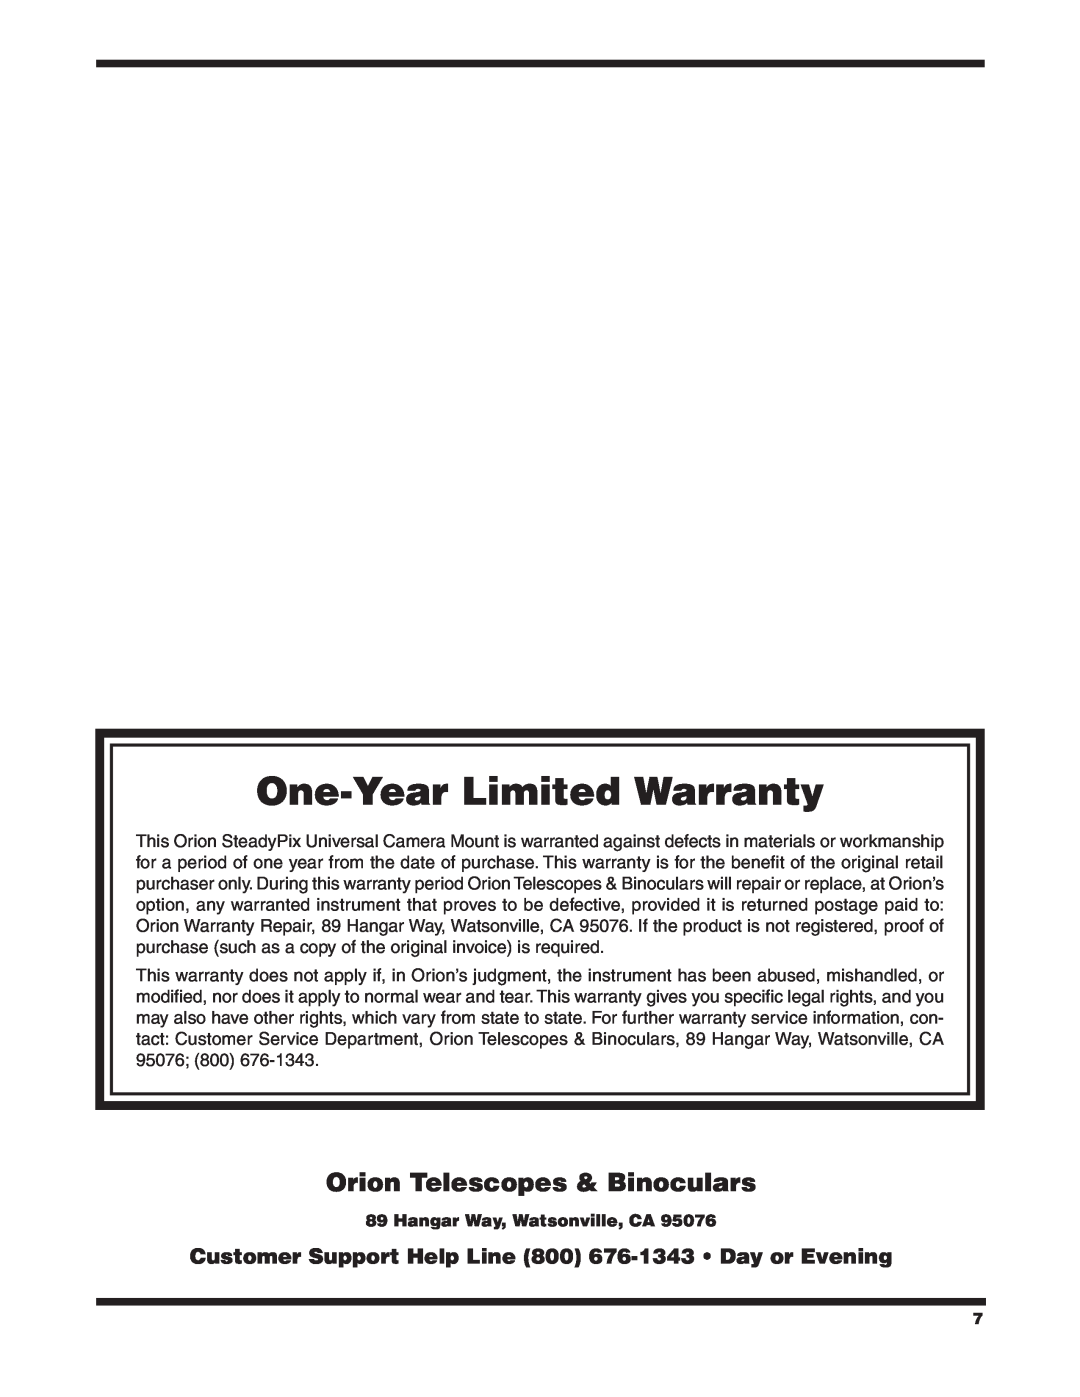 Orion 5228 instruction manual One-Year Limited Warranty, Orion Telescopes & Binoculars, Hangar Way, Watsonville, CA 